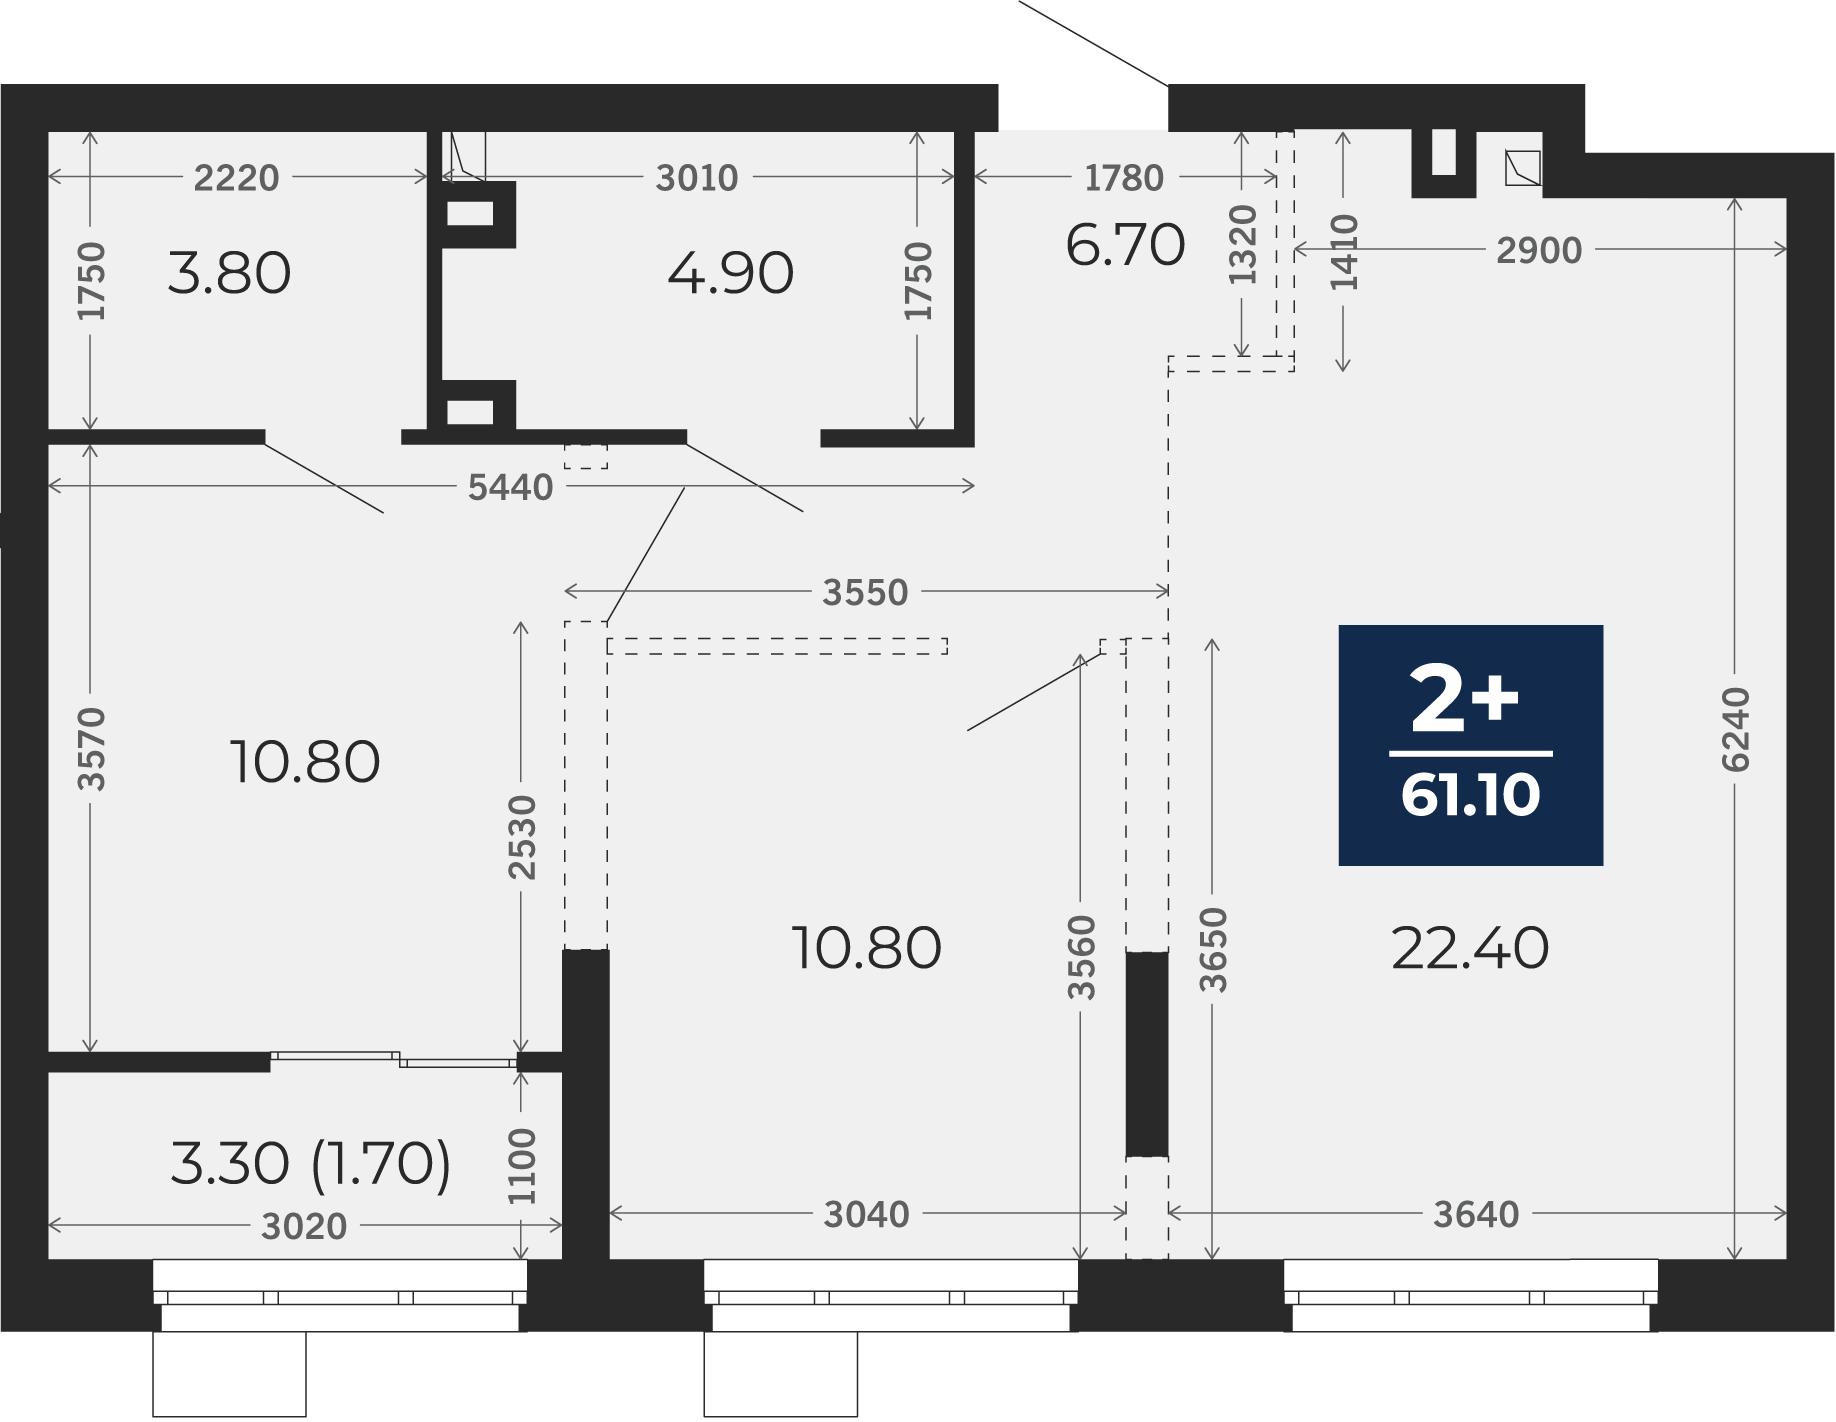 Квартира № 4, 2-комнатная, 61.1 кв. м, 2 этаж